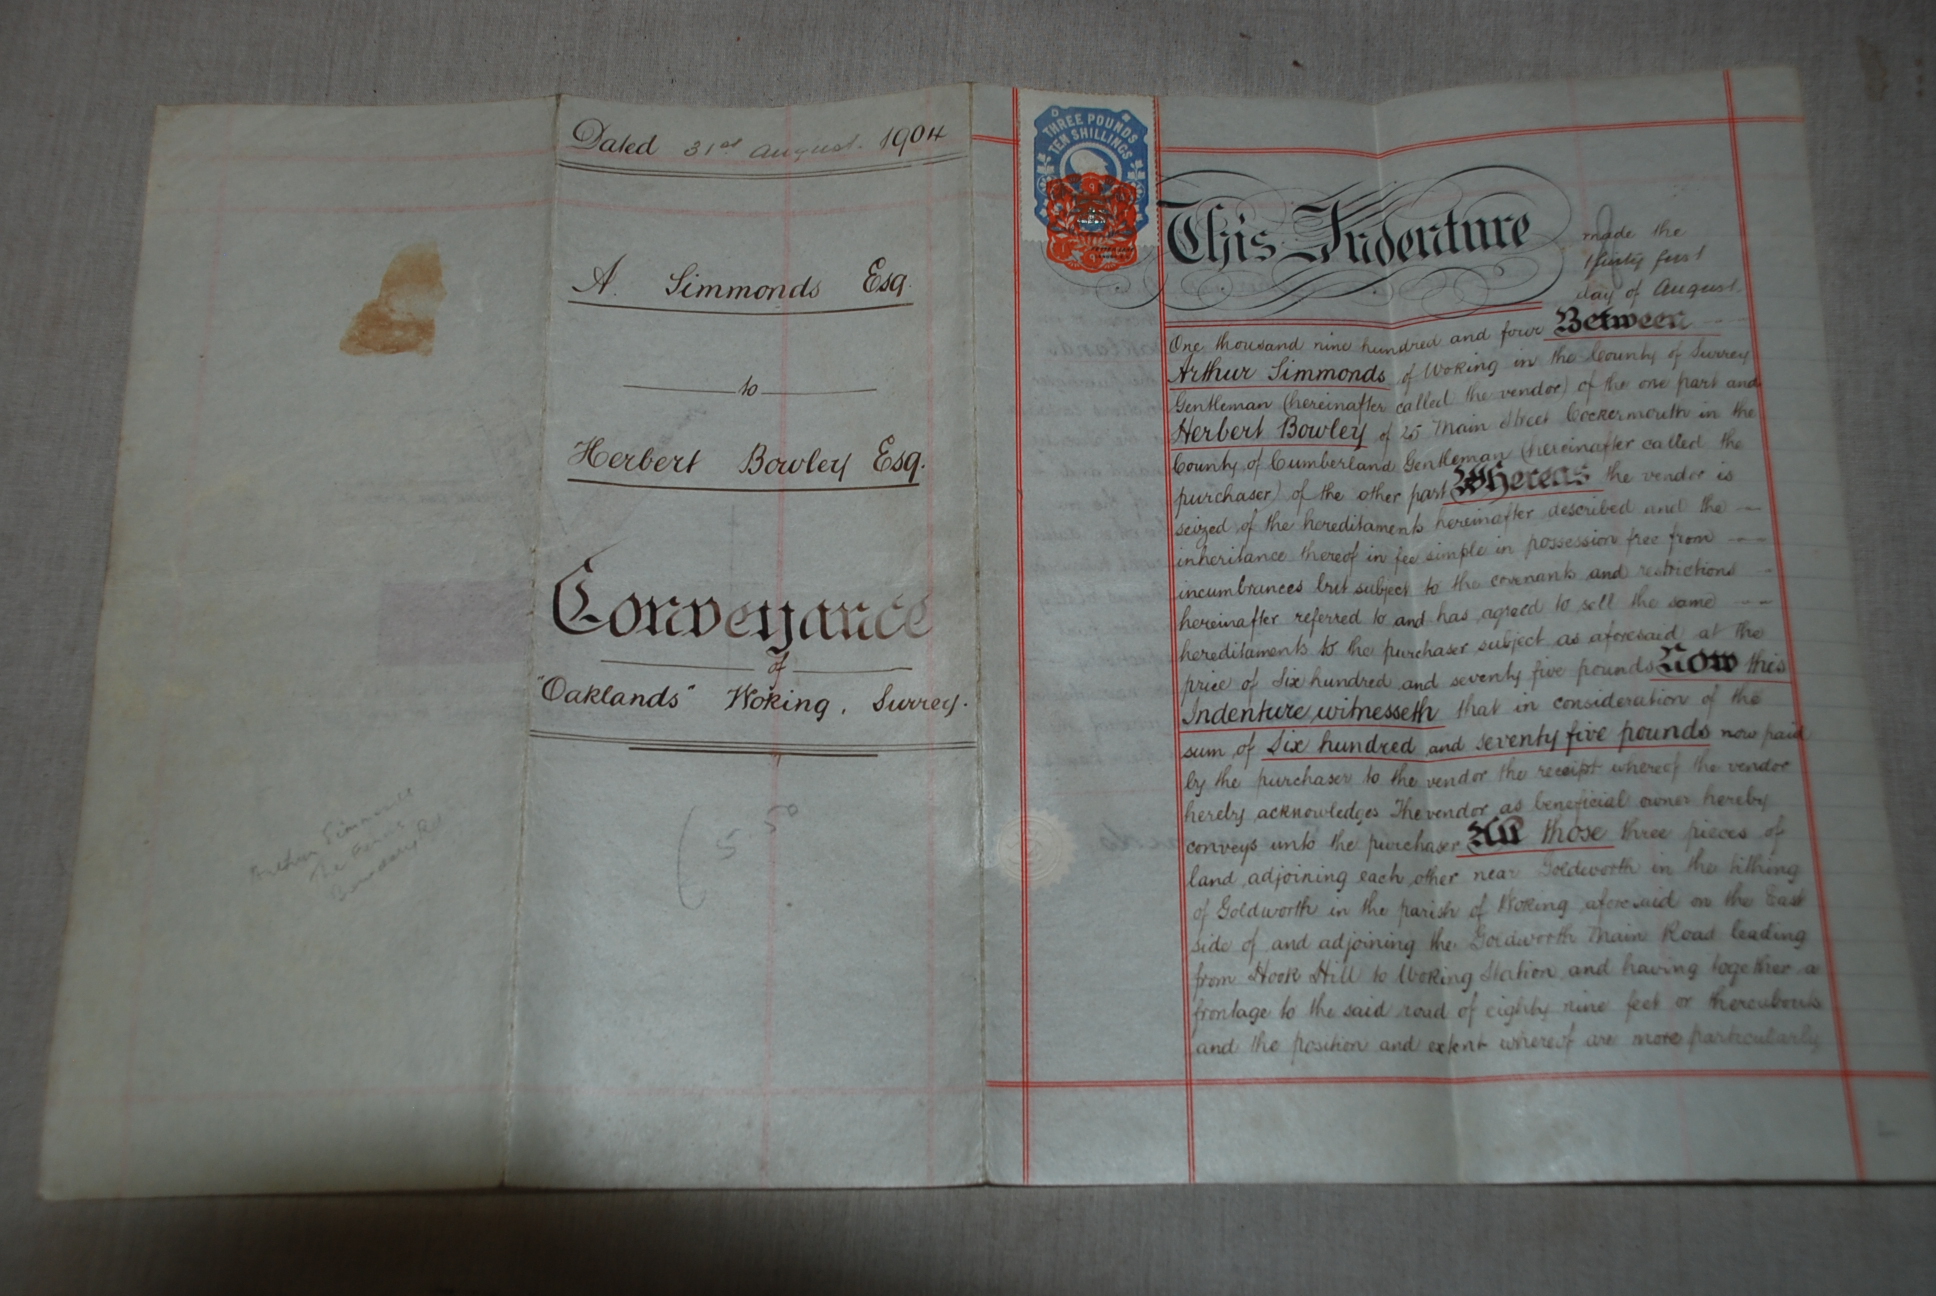 Surrey Woking "Oaklands" vellum conveyance document 31st August 1904 A Simmonds to Herbert Bowley